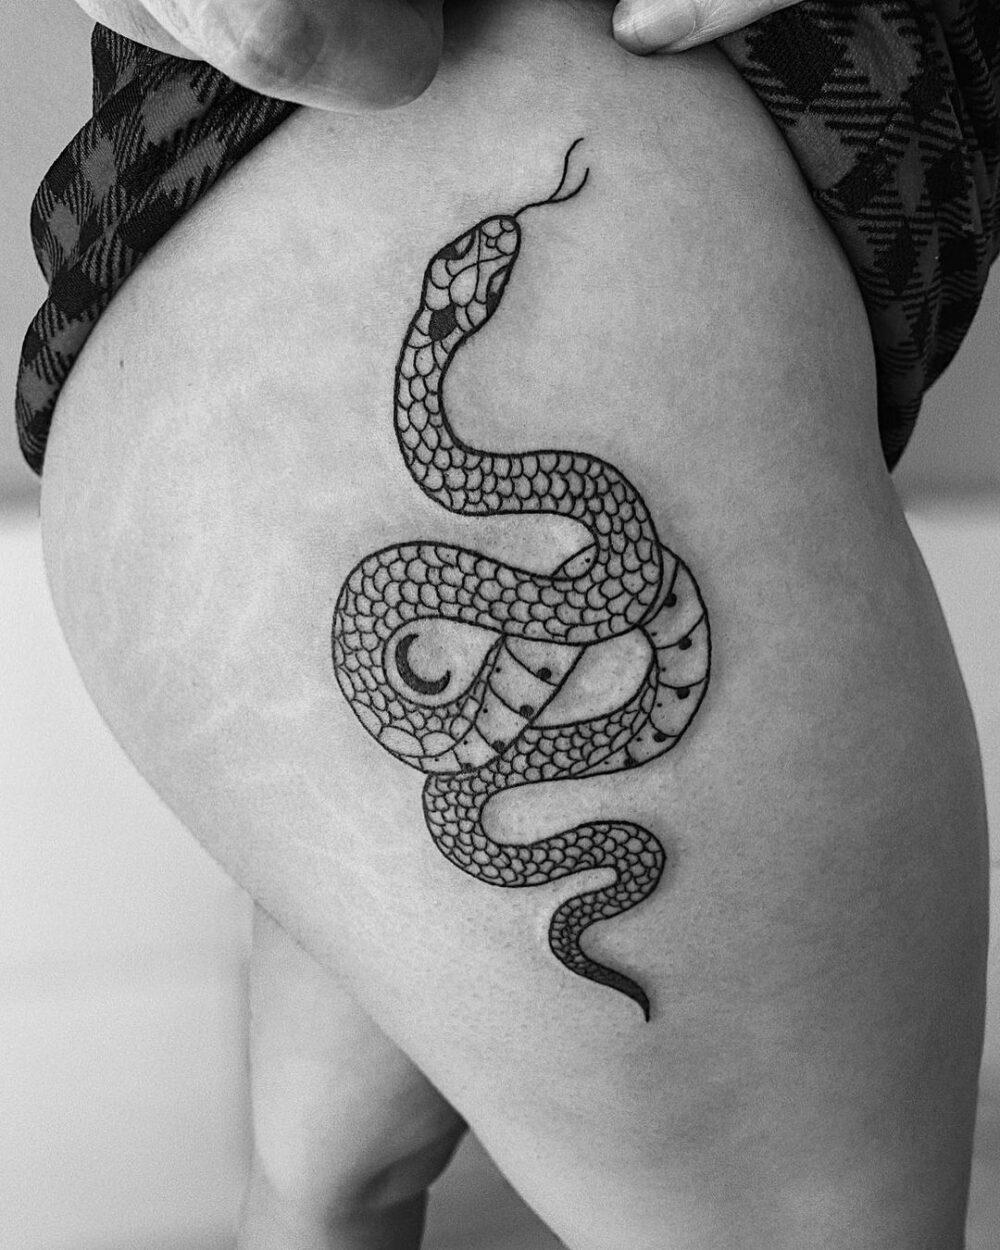 tattoo de serpente na nádega